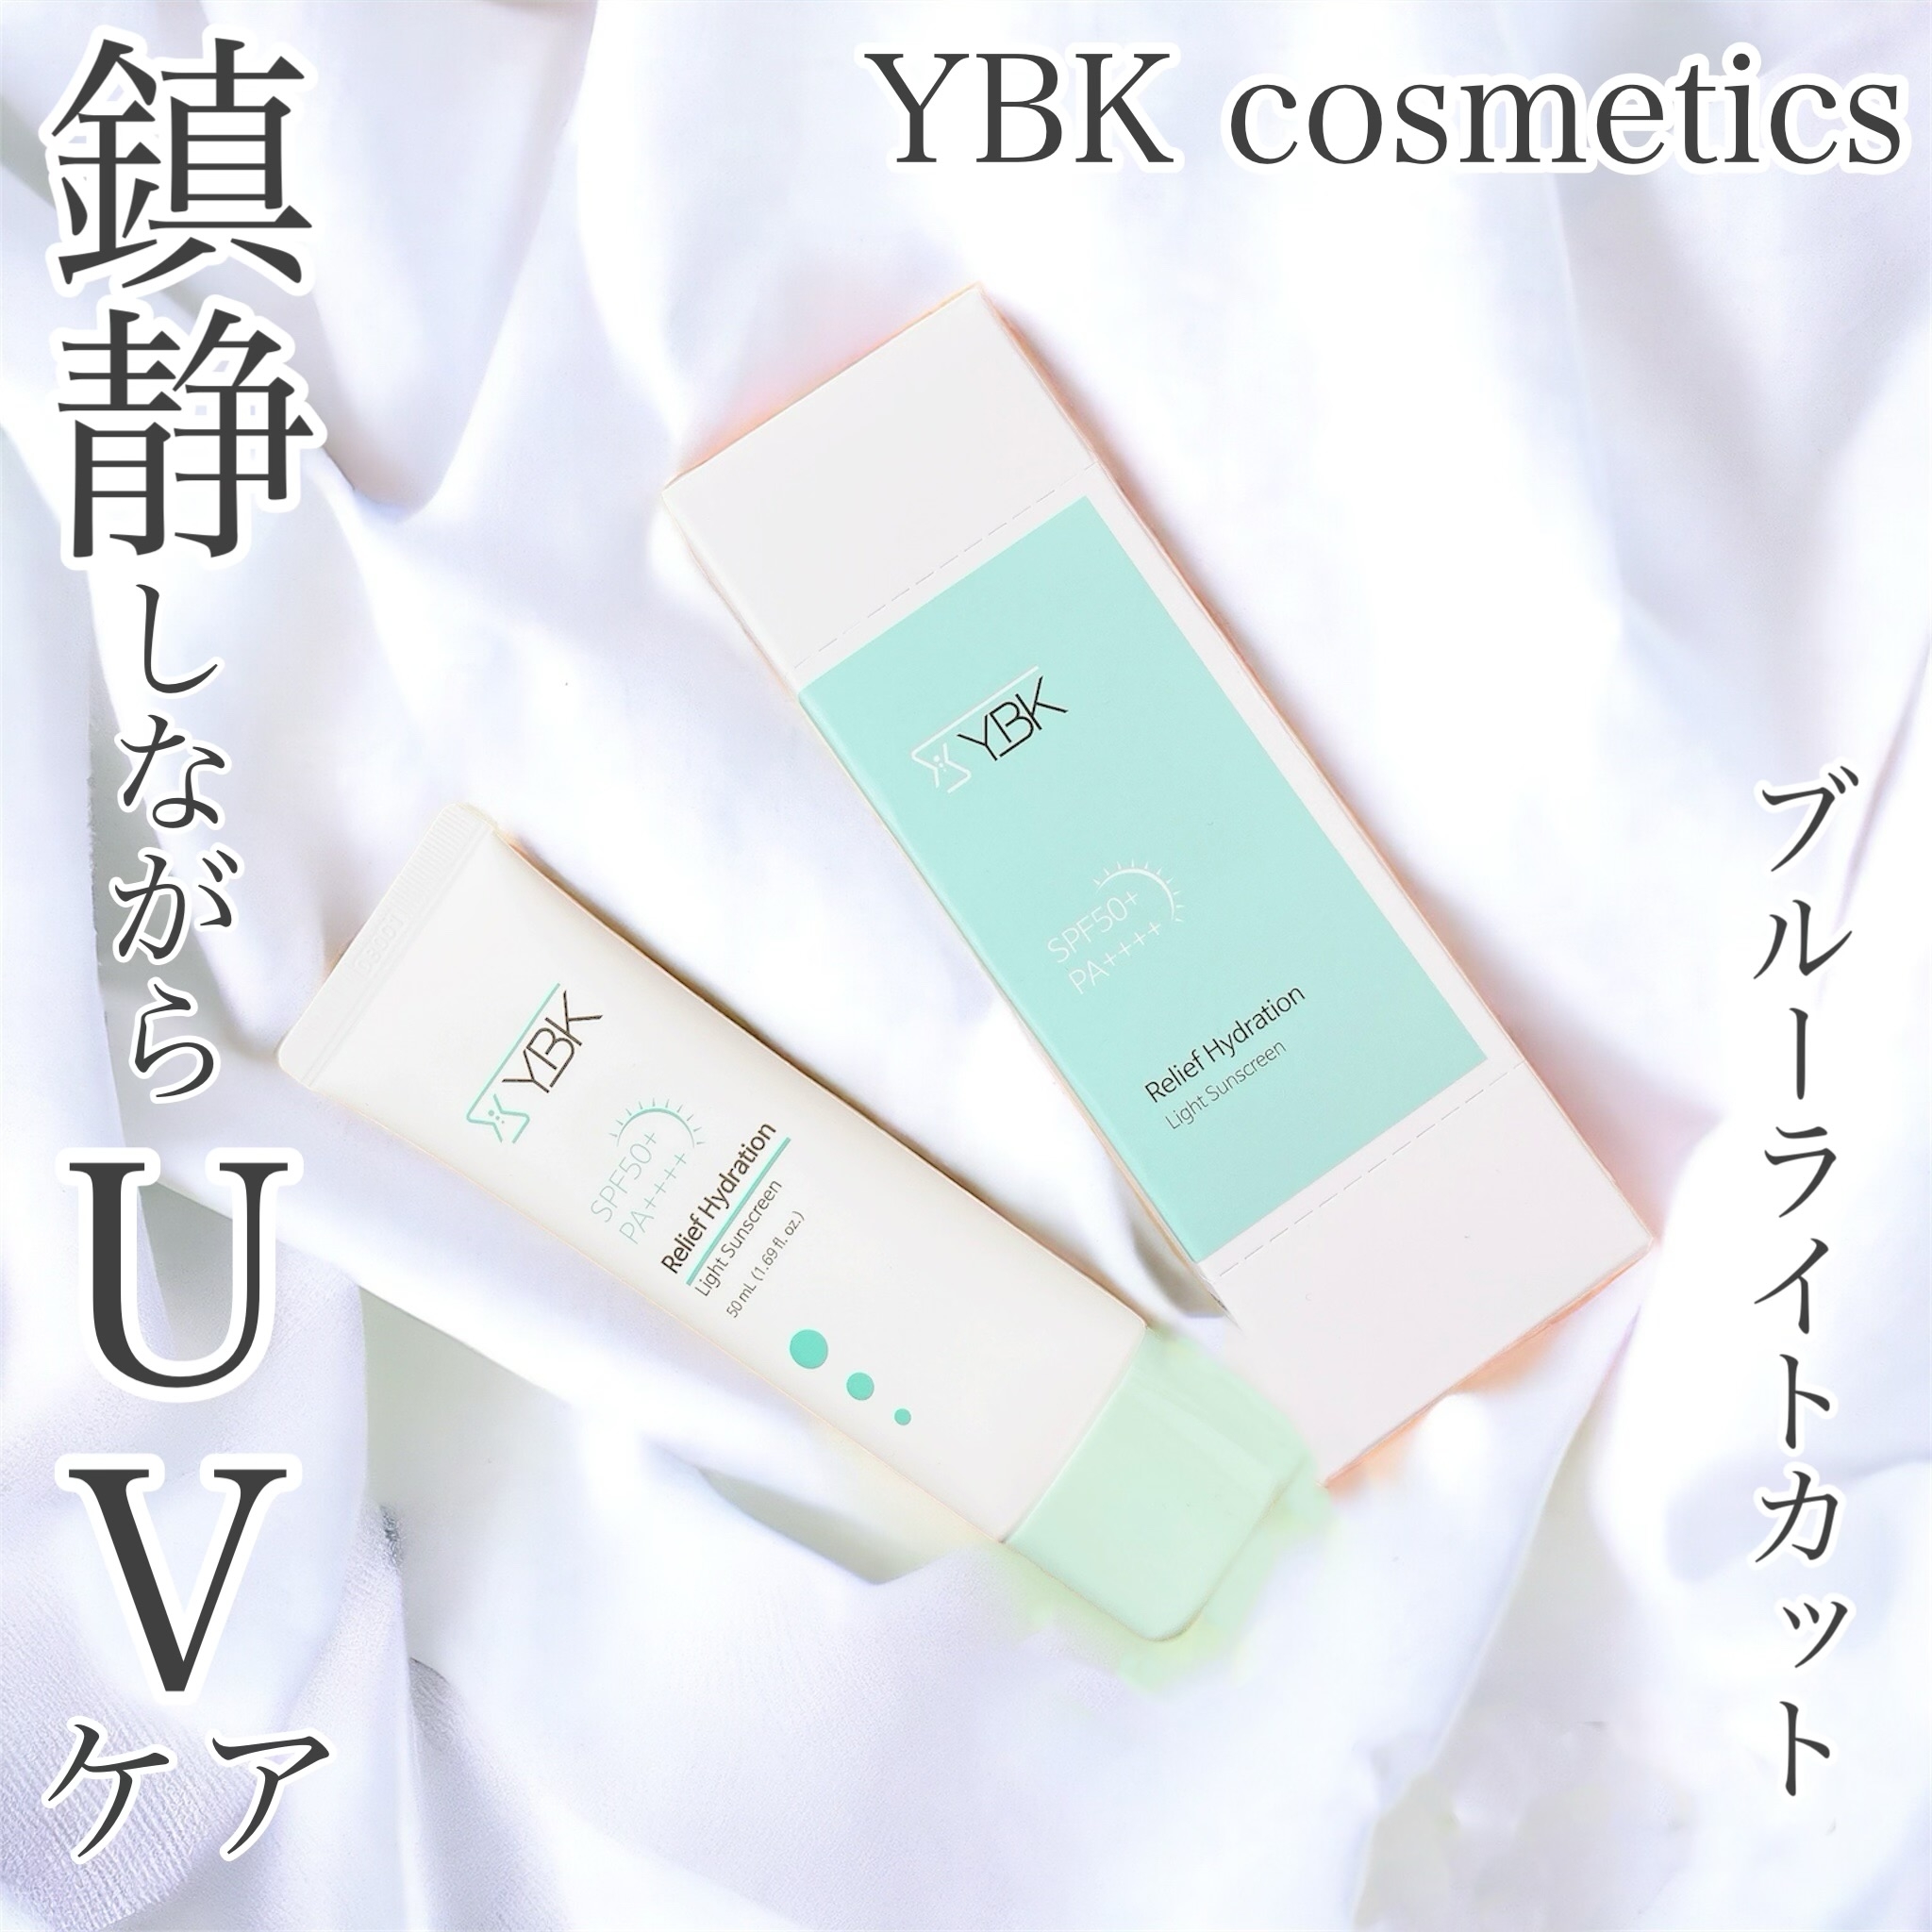 YBK cosmetics リリーフハイドレーションライトサンスクリーンを使ったおかんさんのクチコミ画像1